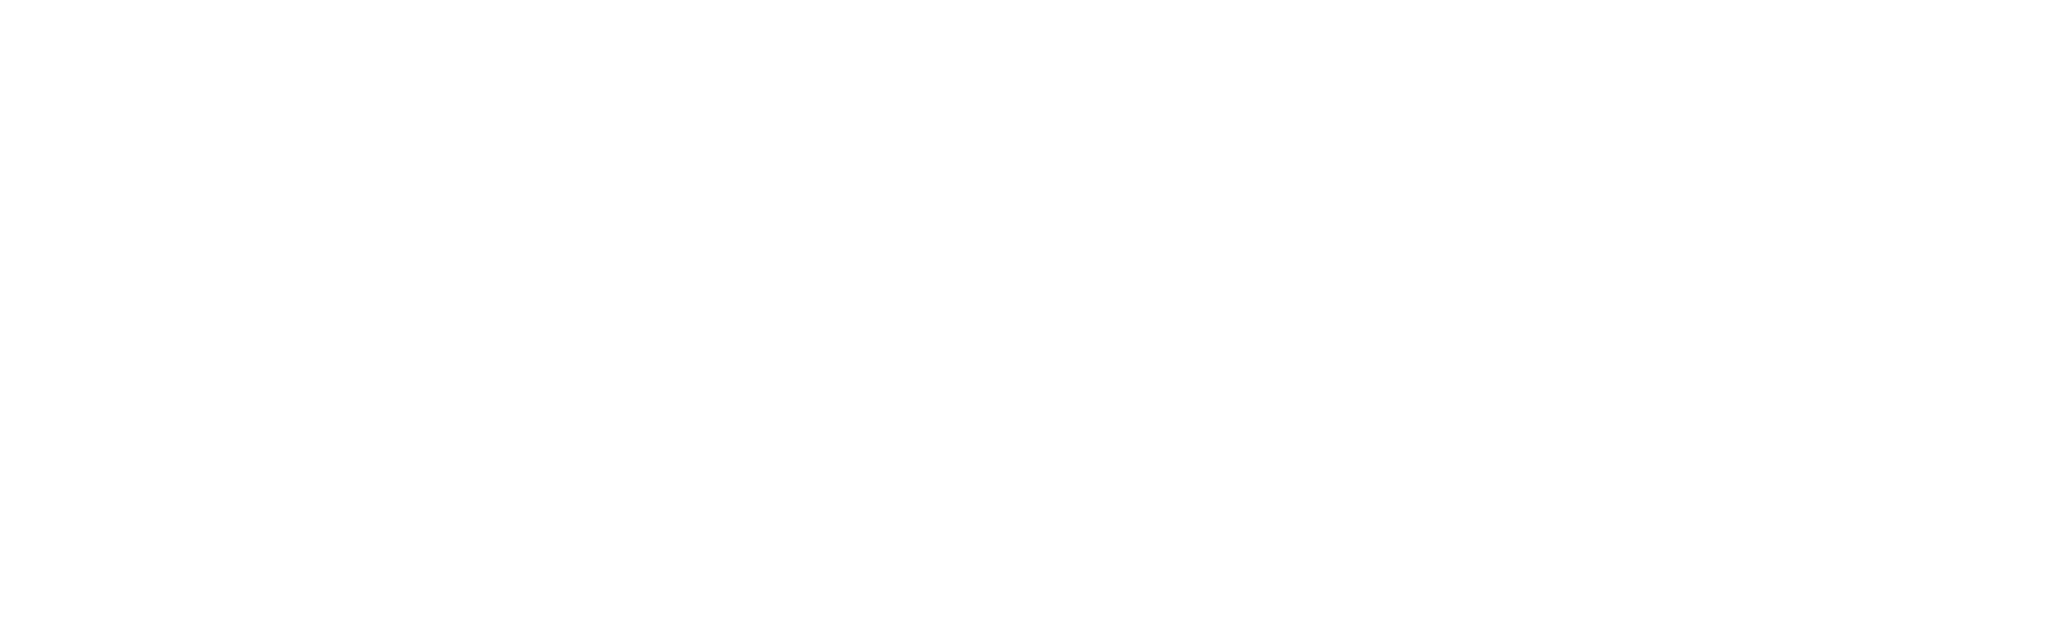 Comité National de Coordination de la Recherche